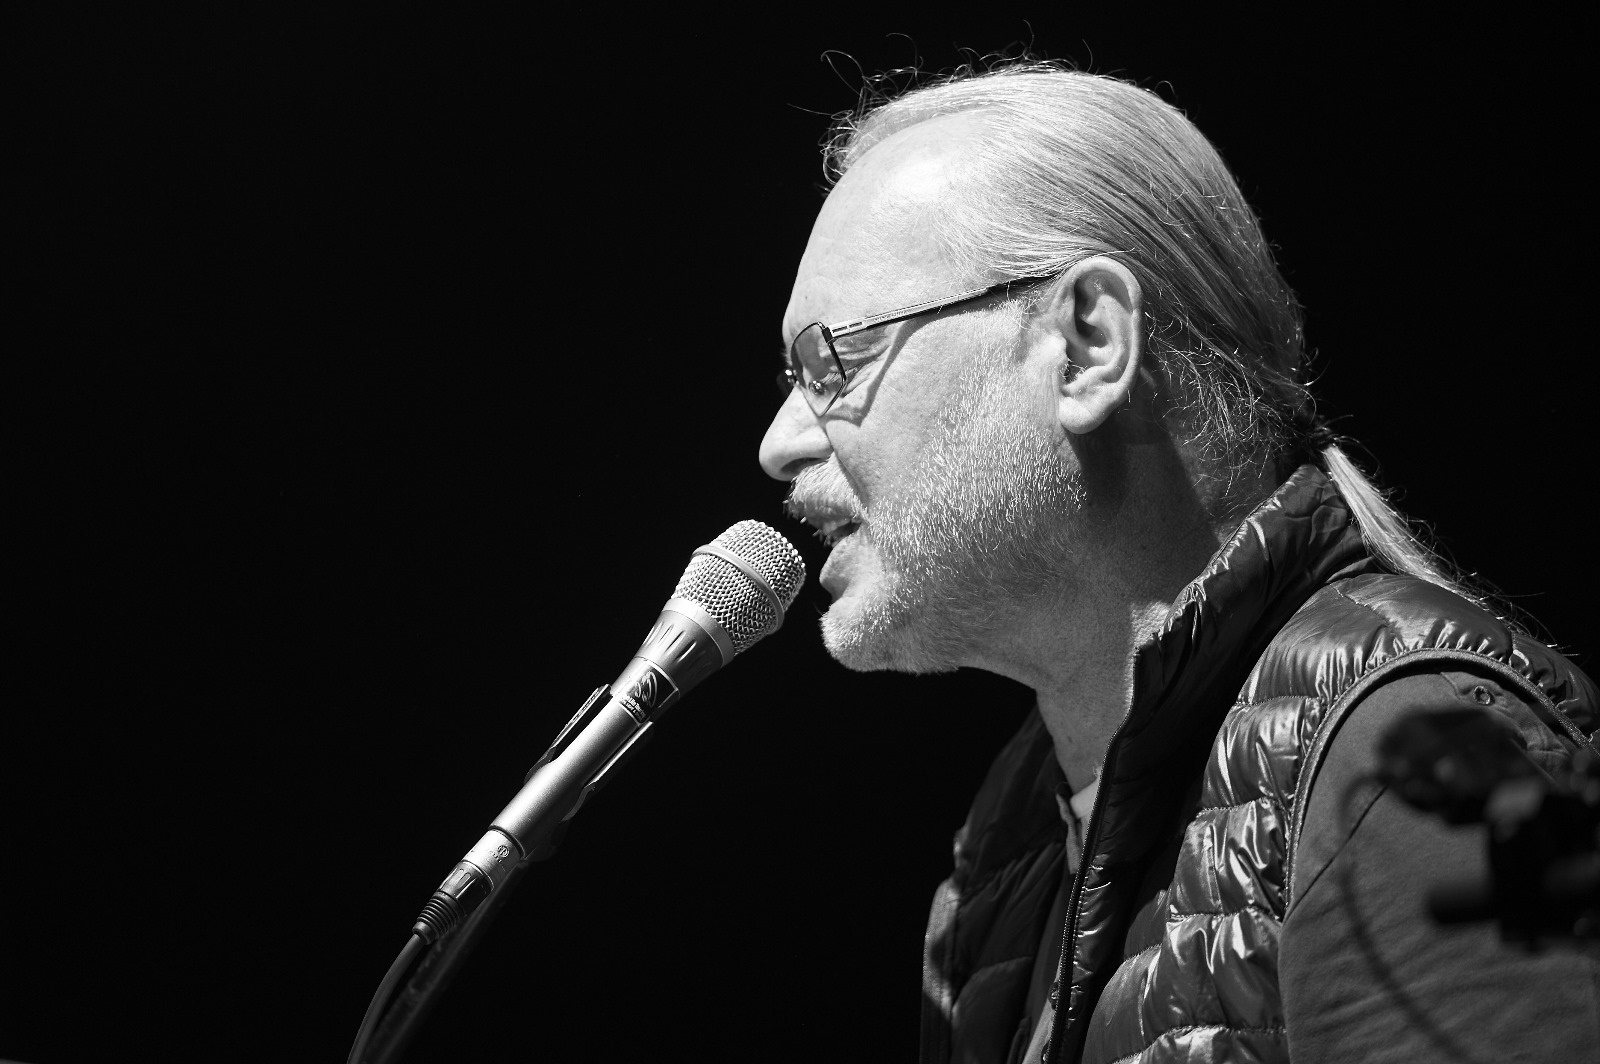 Vo veku 64 rokov zomrel legedárny slovenský hudobník a člen skupiny Elán Vašo Patejdl.